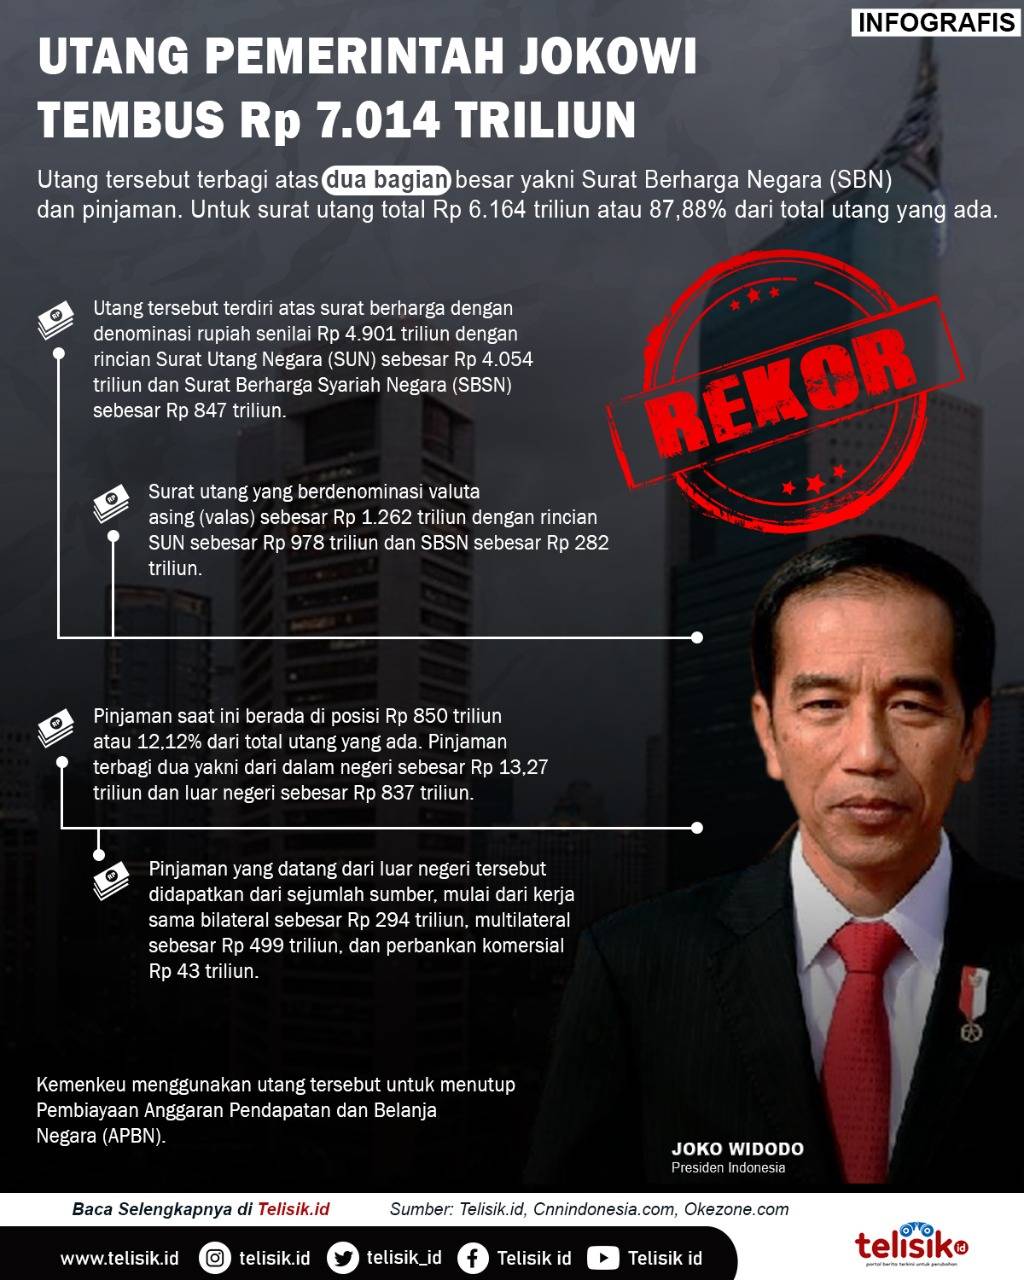 Infografis: Pecah Rekor, Utang Pemerintah Jokowi Tembus Rp 7.014 Triliun, Berikut Rinciannya